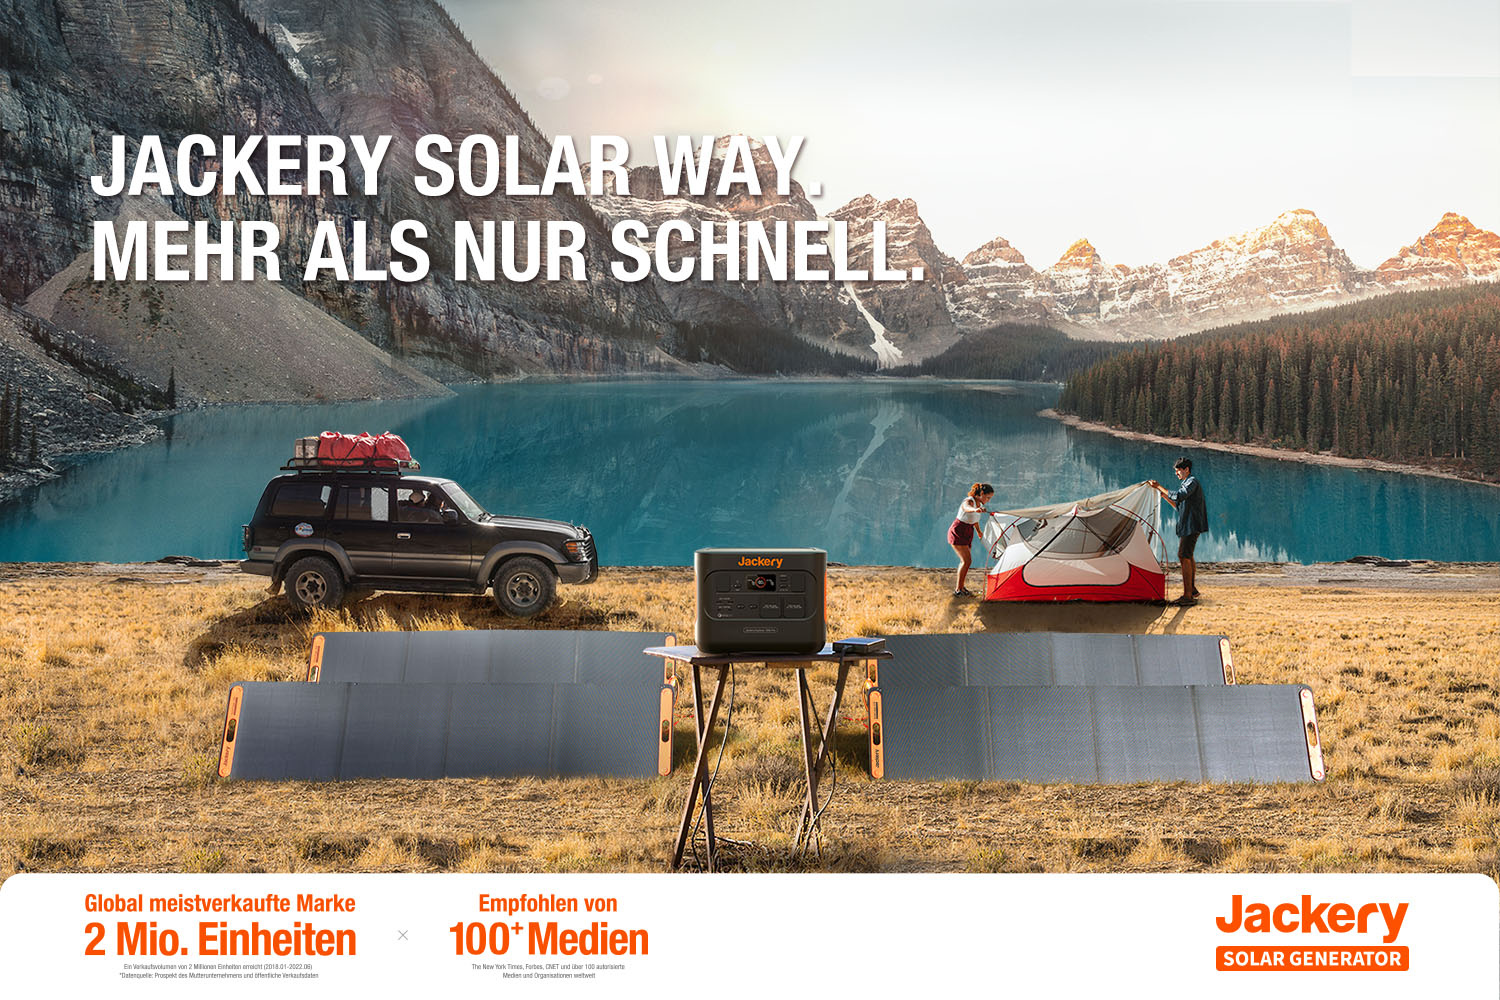 Jackery ist die global meistverkaufte Marke von Solargeneratoren. Foto: Jackery